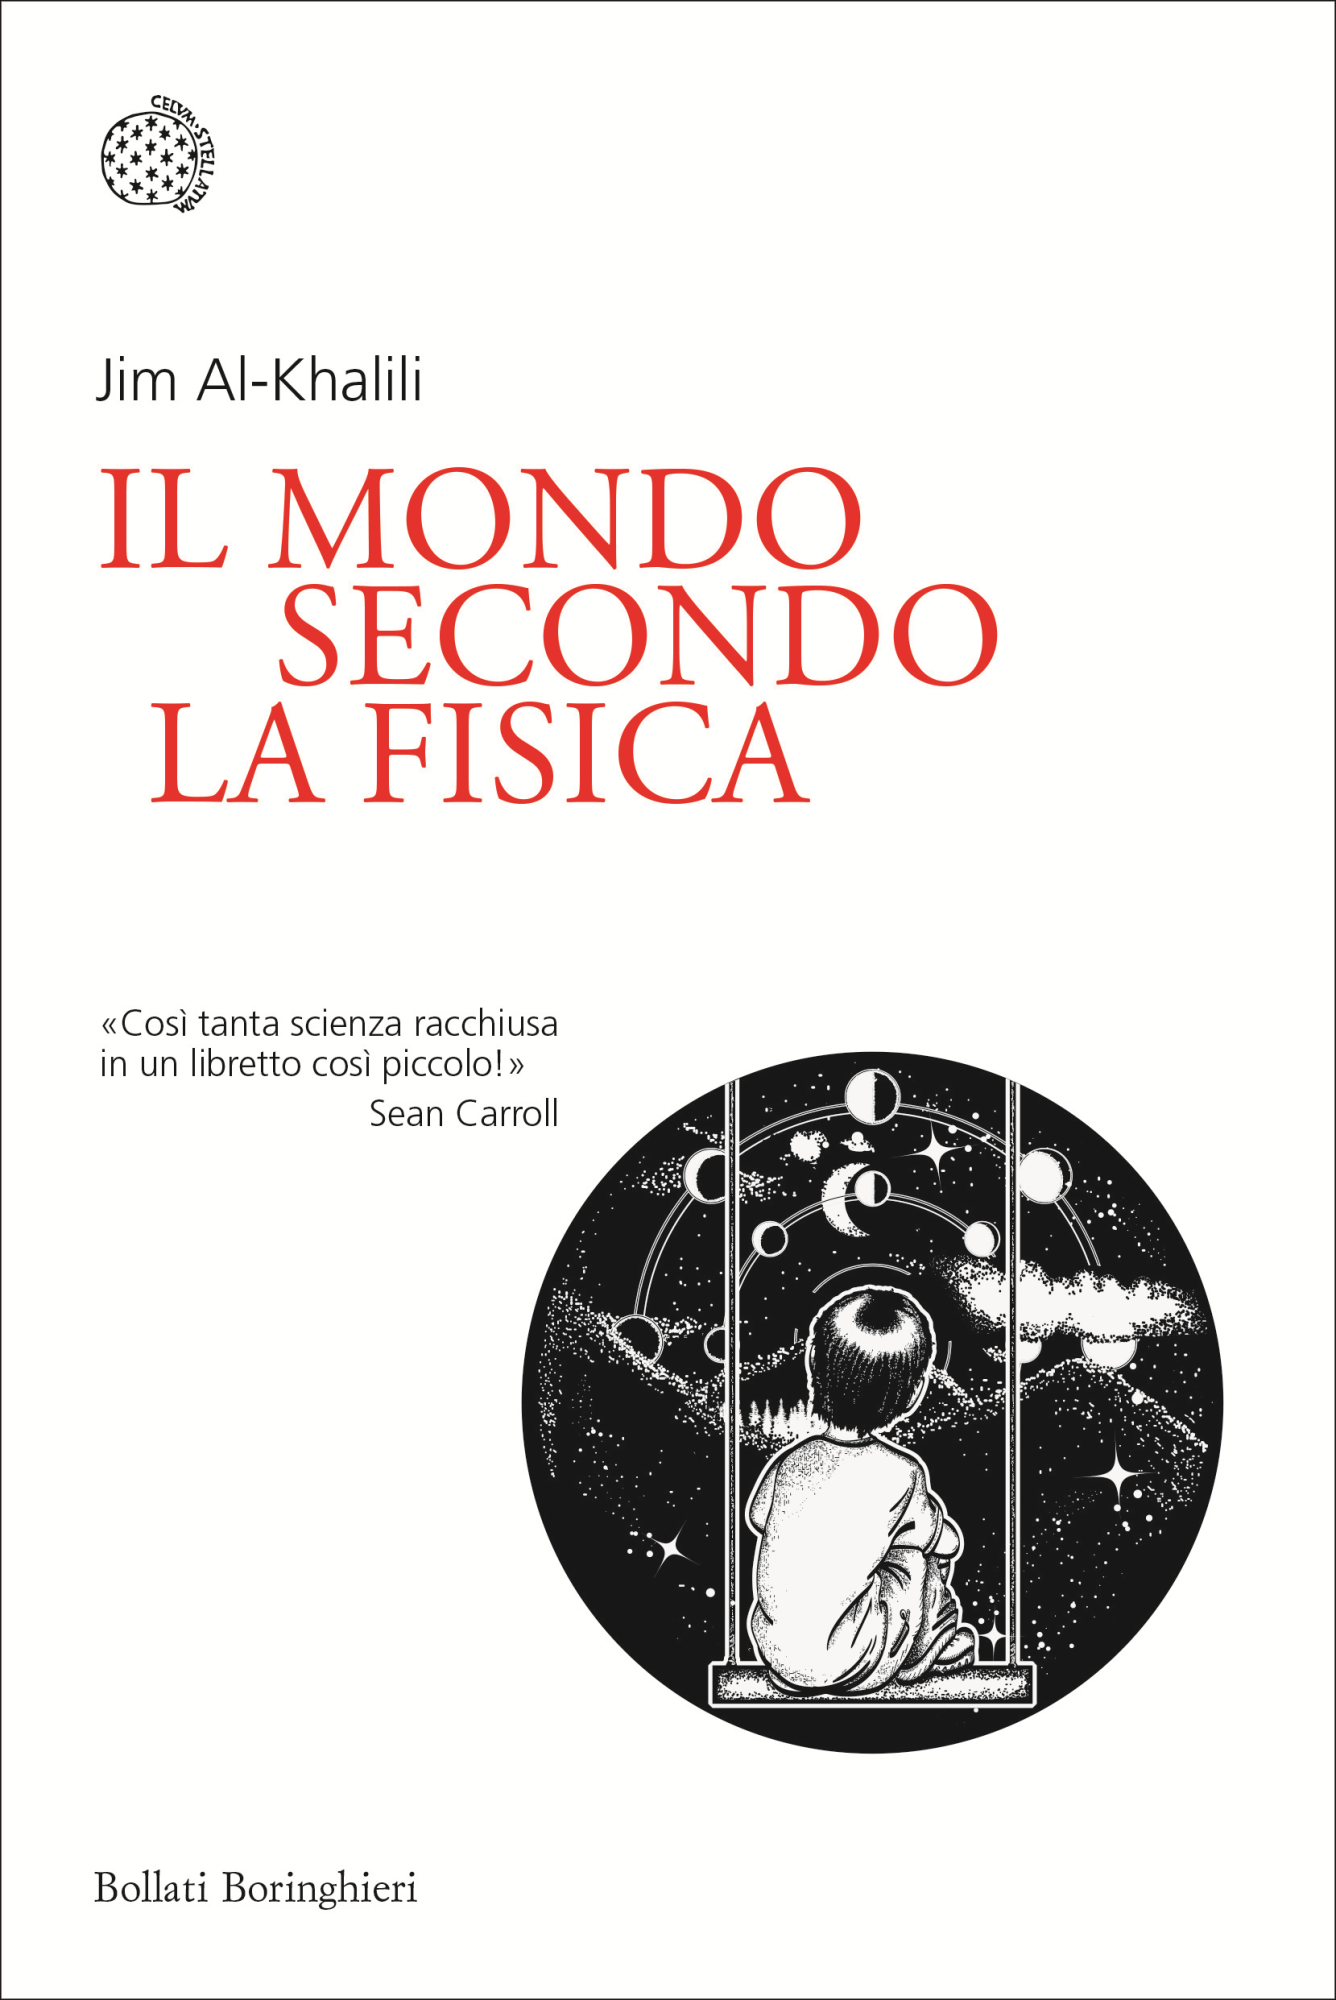 Libri Jim Al-Khalili - Il Mondo Secondo La Fisica NUOVO SIGILLATO, EDIZIONE DEL 27/08/2020 SUBITO DISPONIBILE